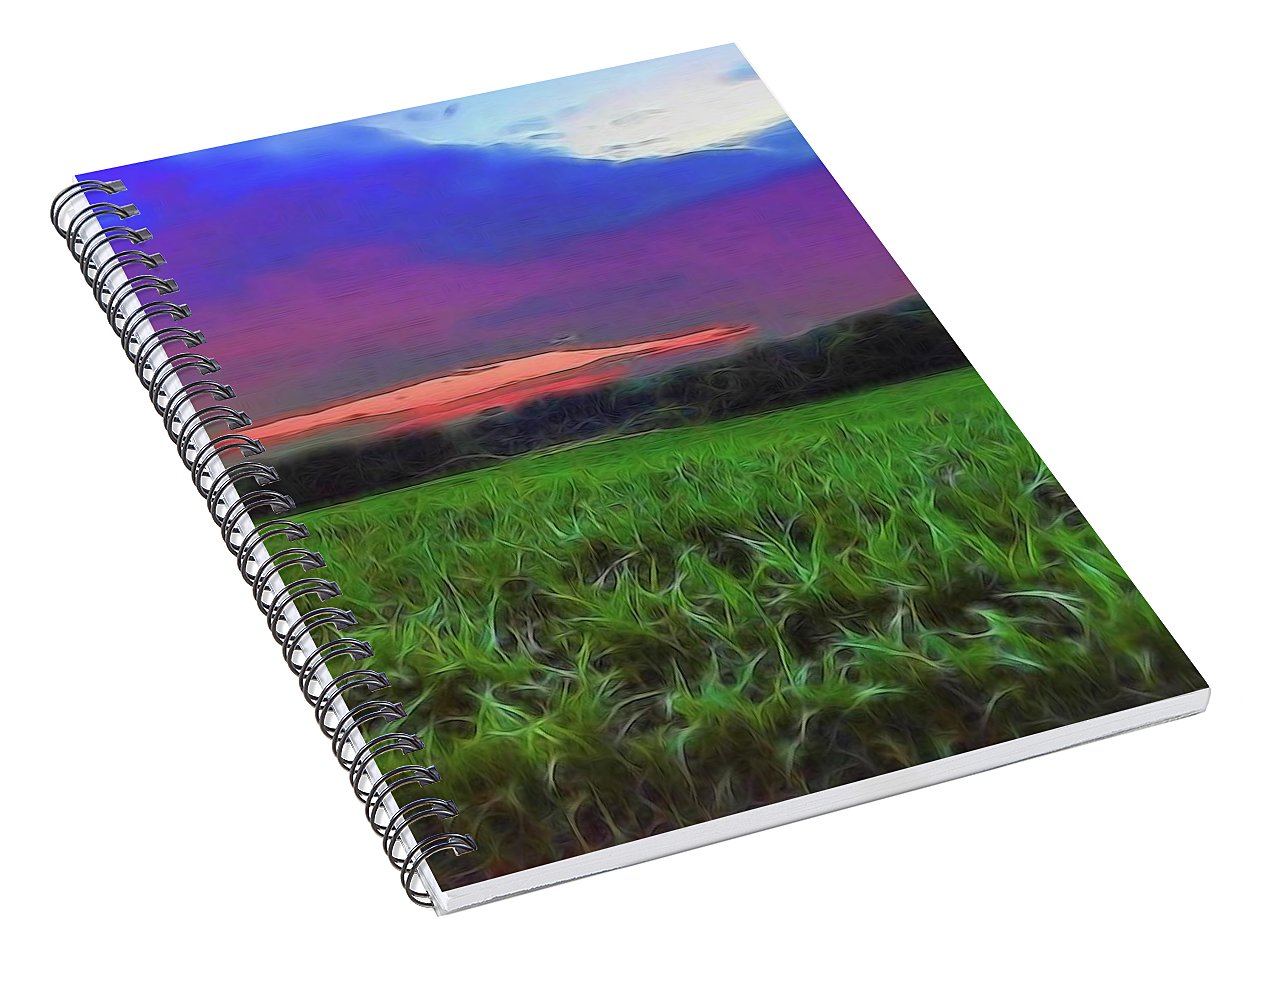 Sunset Over a Cornfield - Spiral Notebook